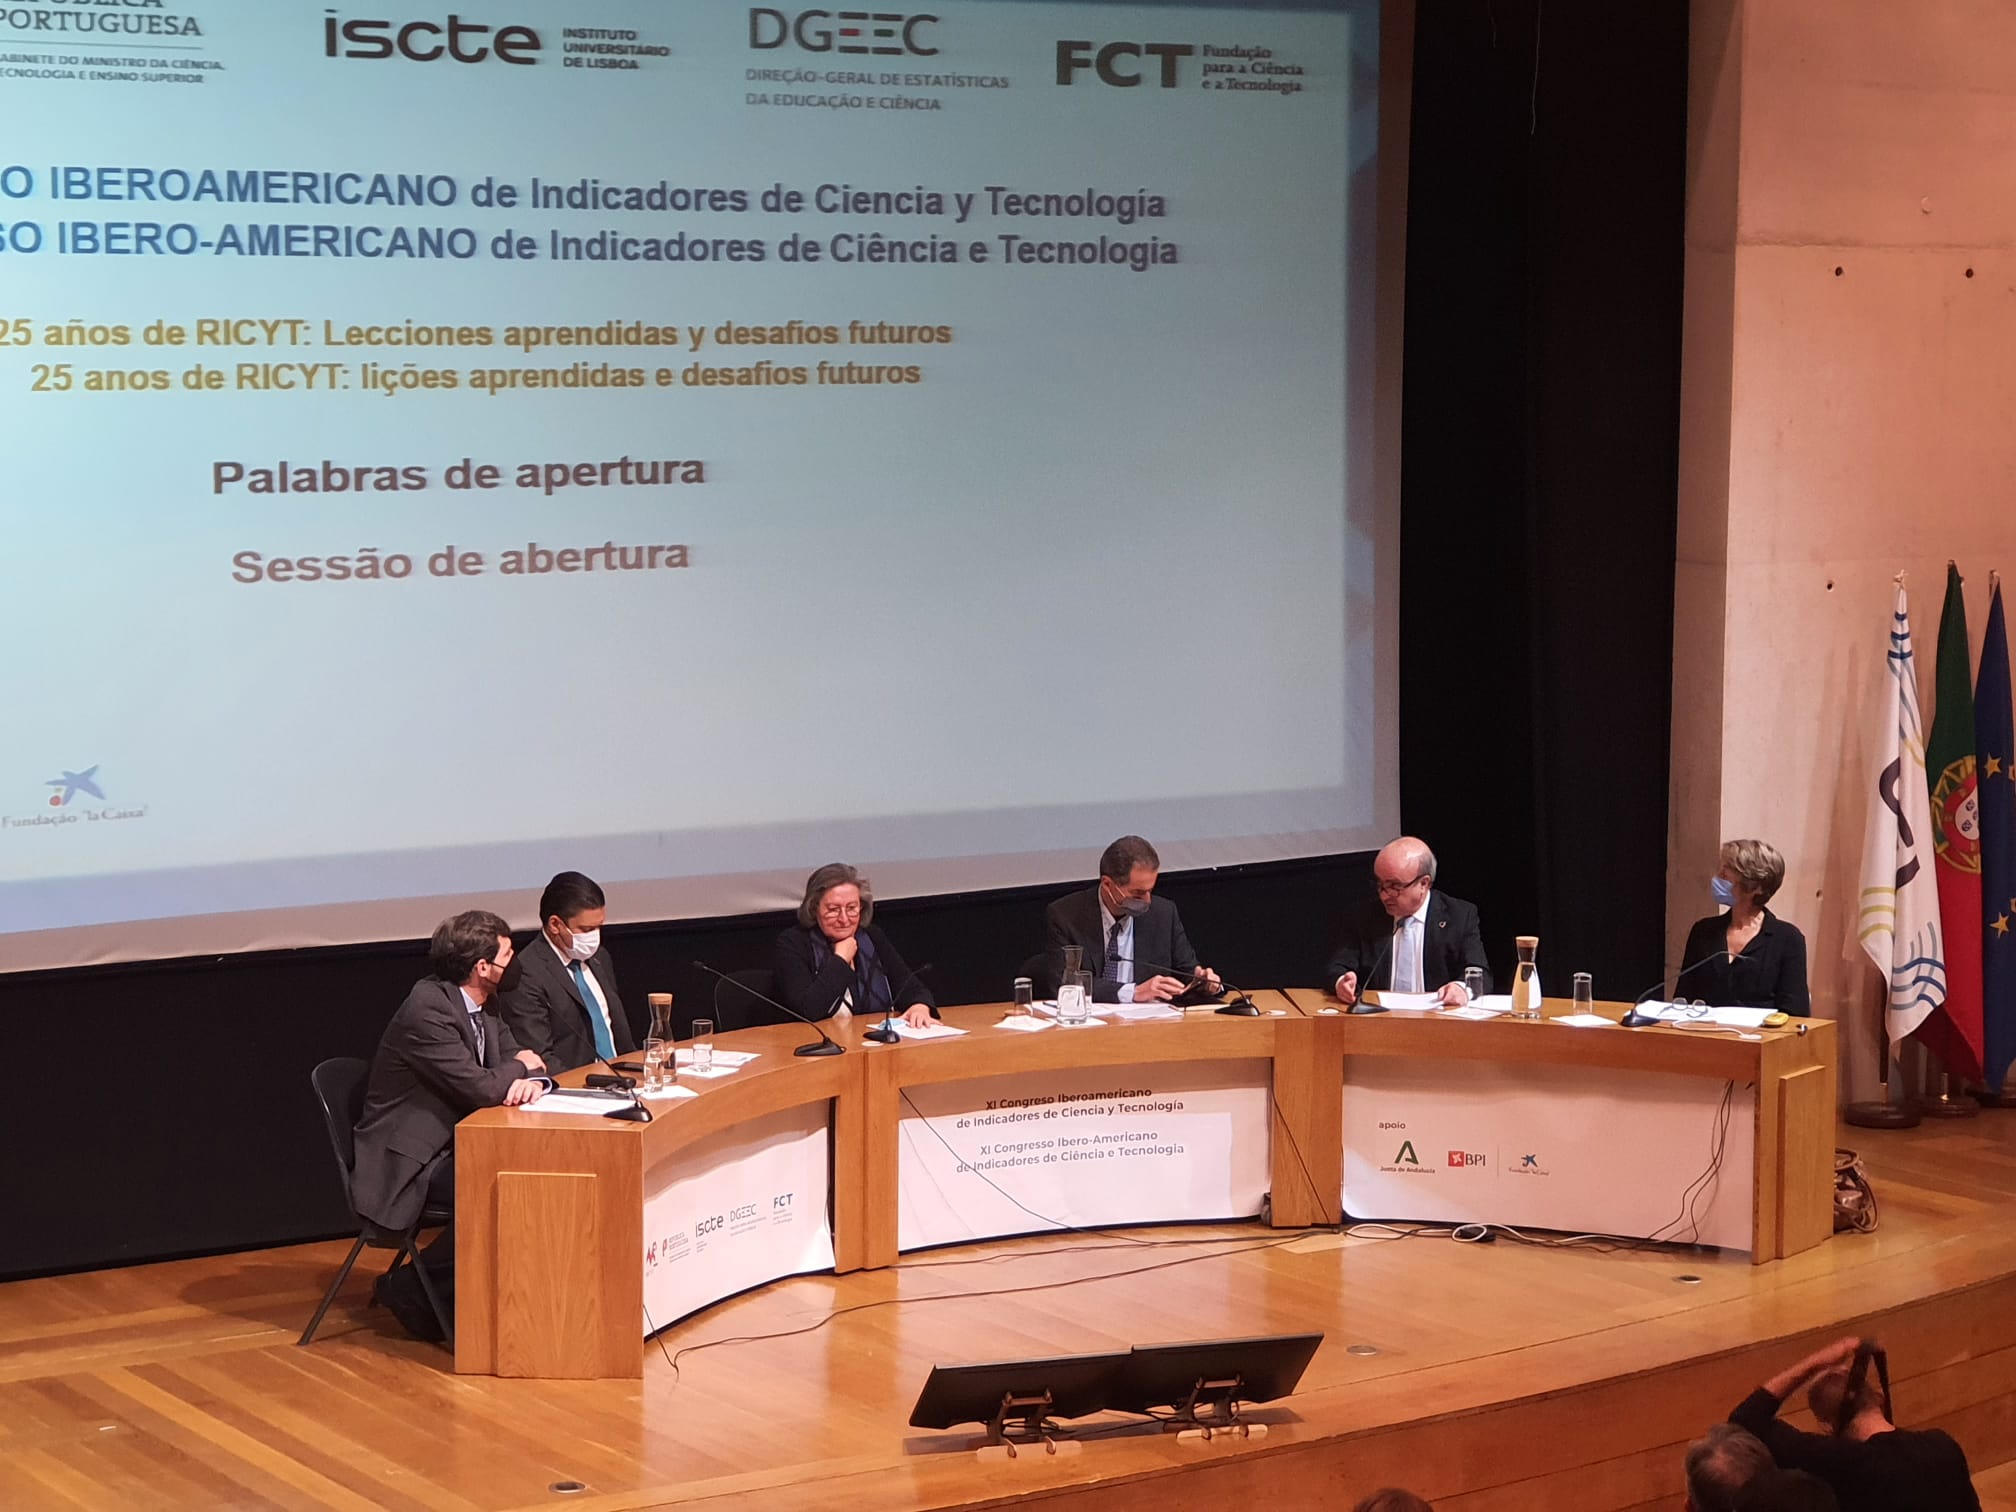 XI Congresso da RICYT analisa indicadores científicos e tecnológicos na Ibero-América